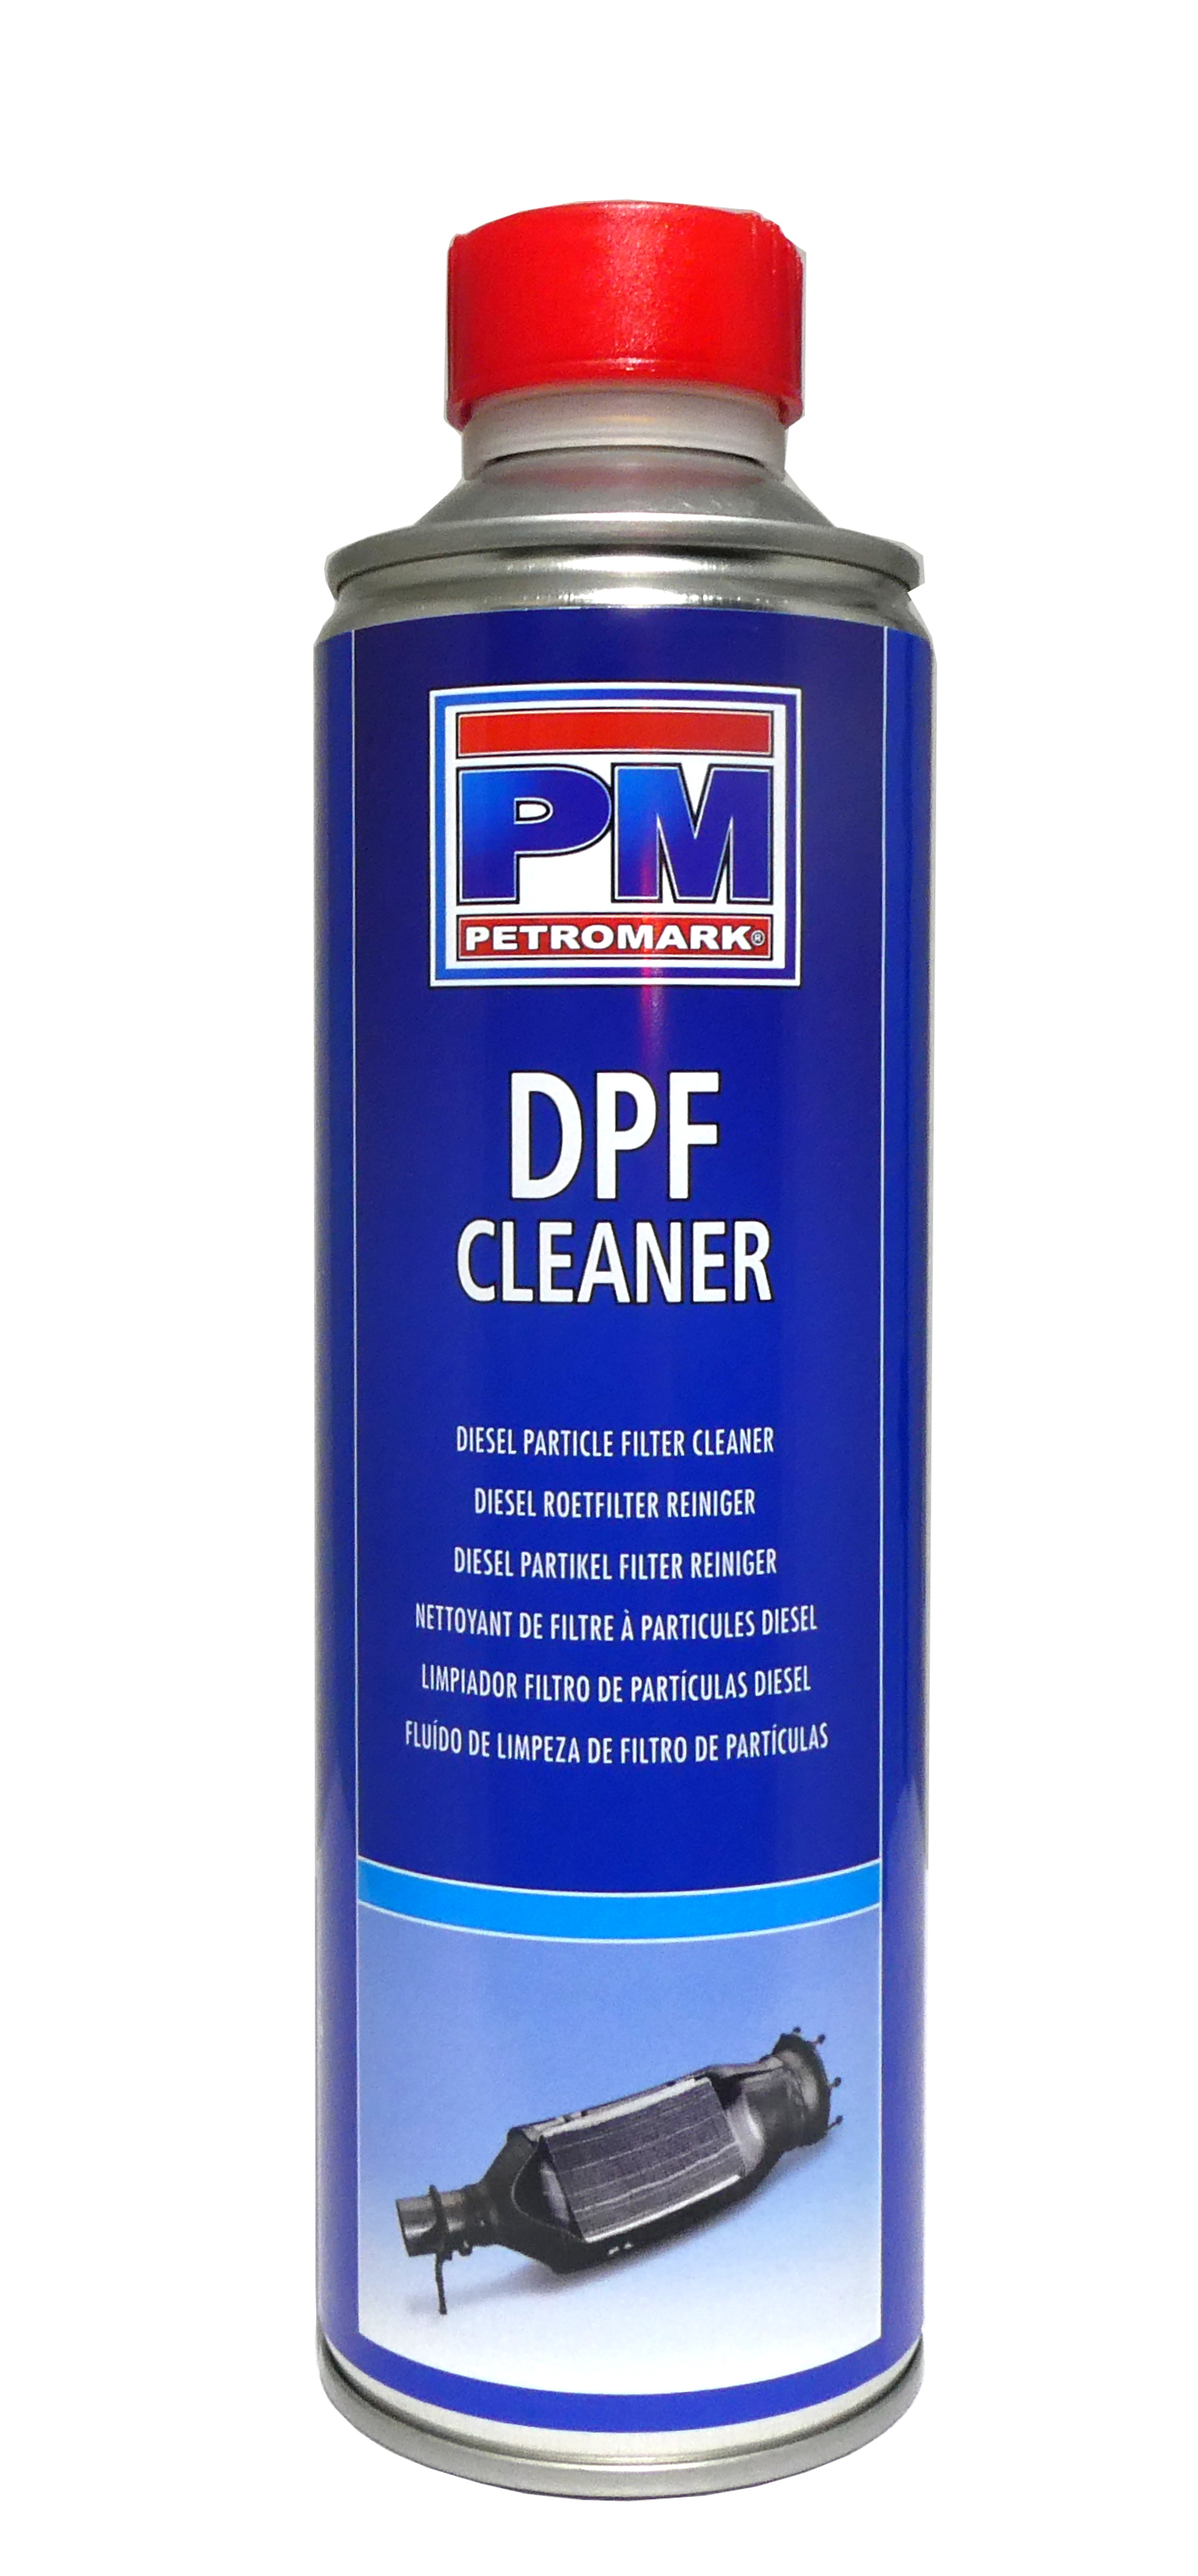 Limpiador filtro de partículas diésel PDF 500ml. Petromark